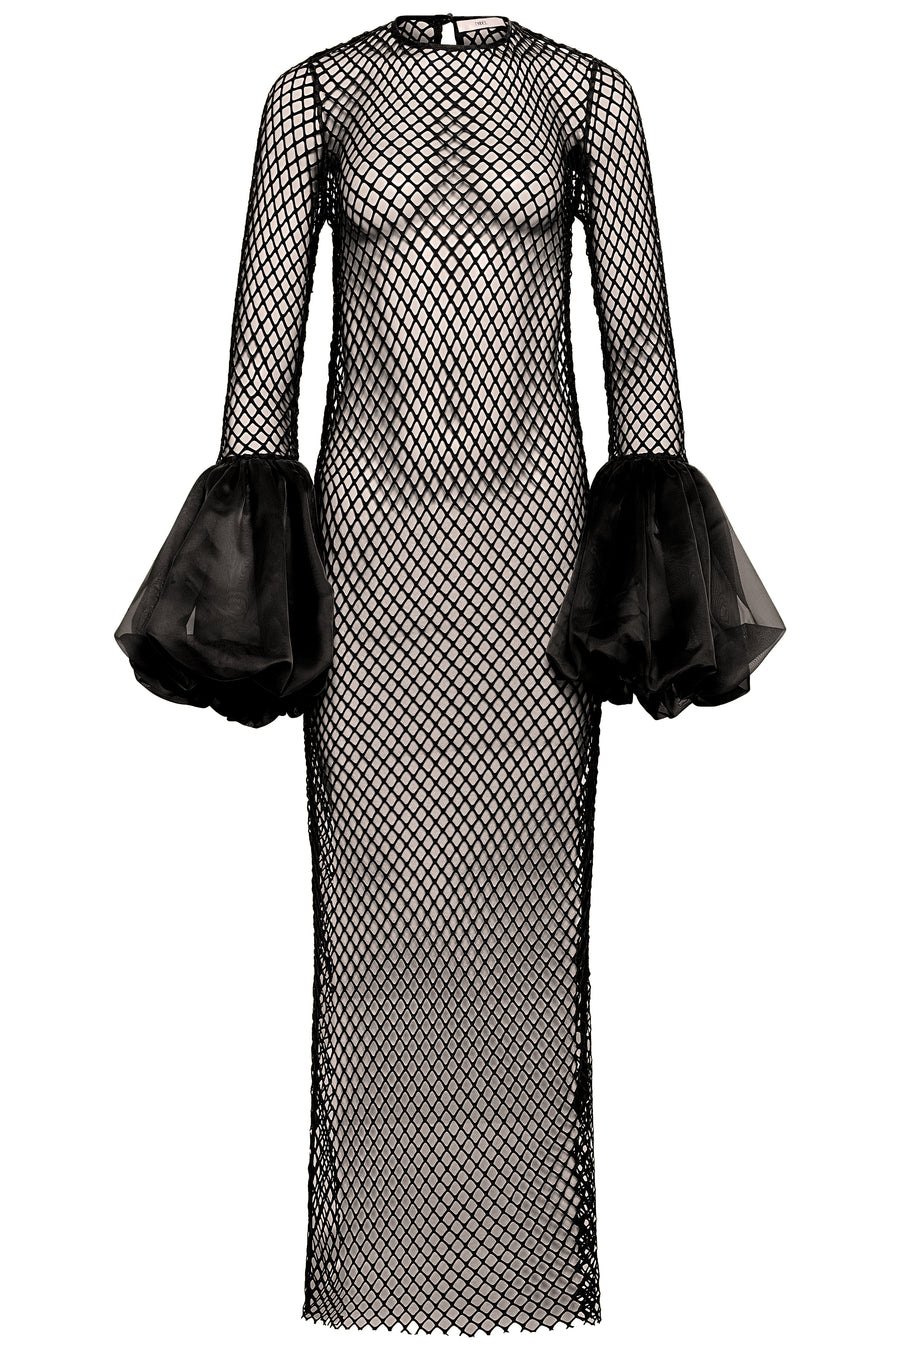 Lola Netted Dress Noir